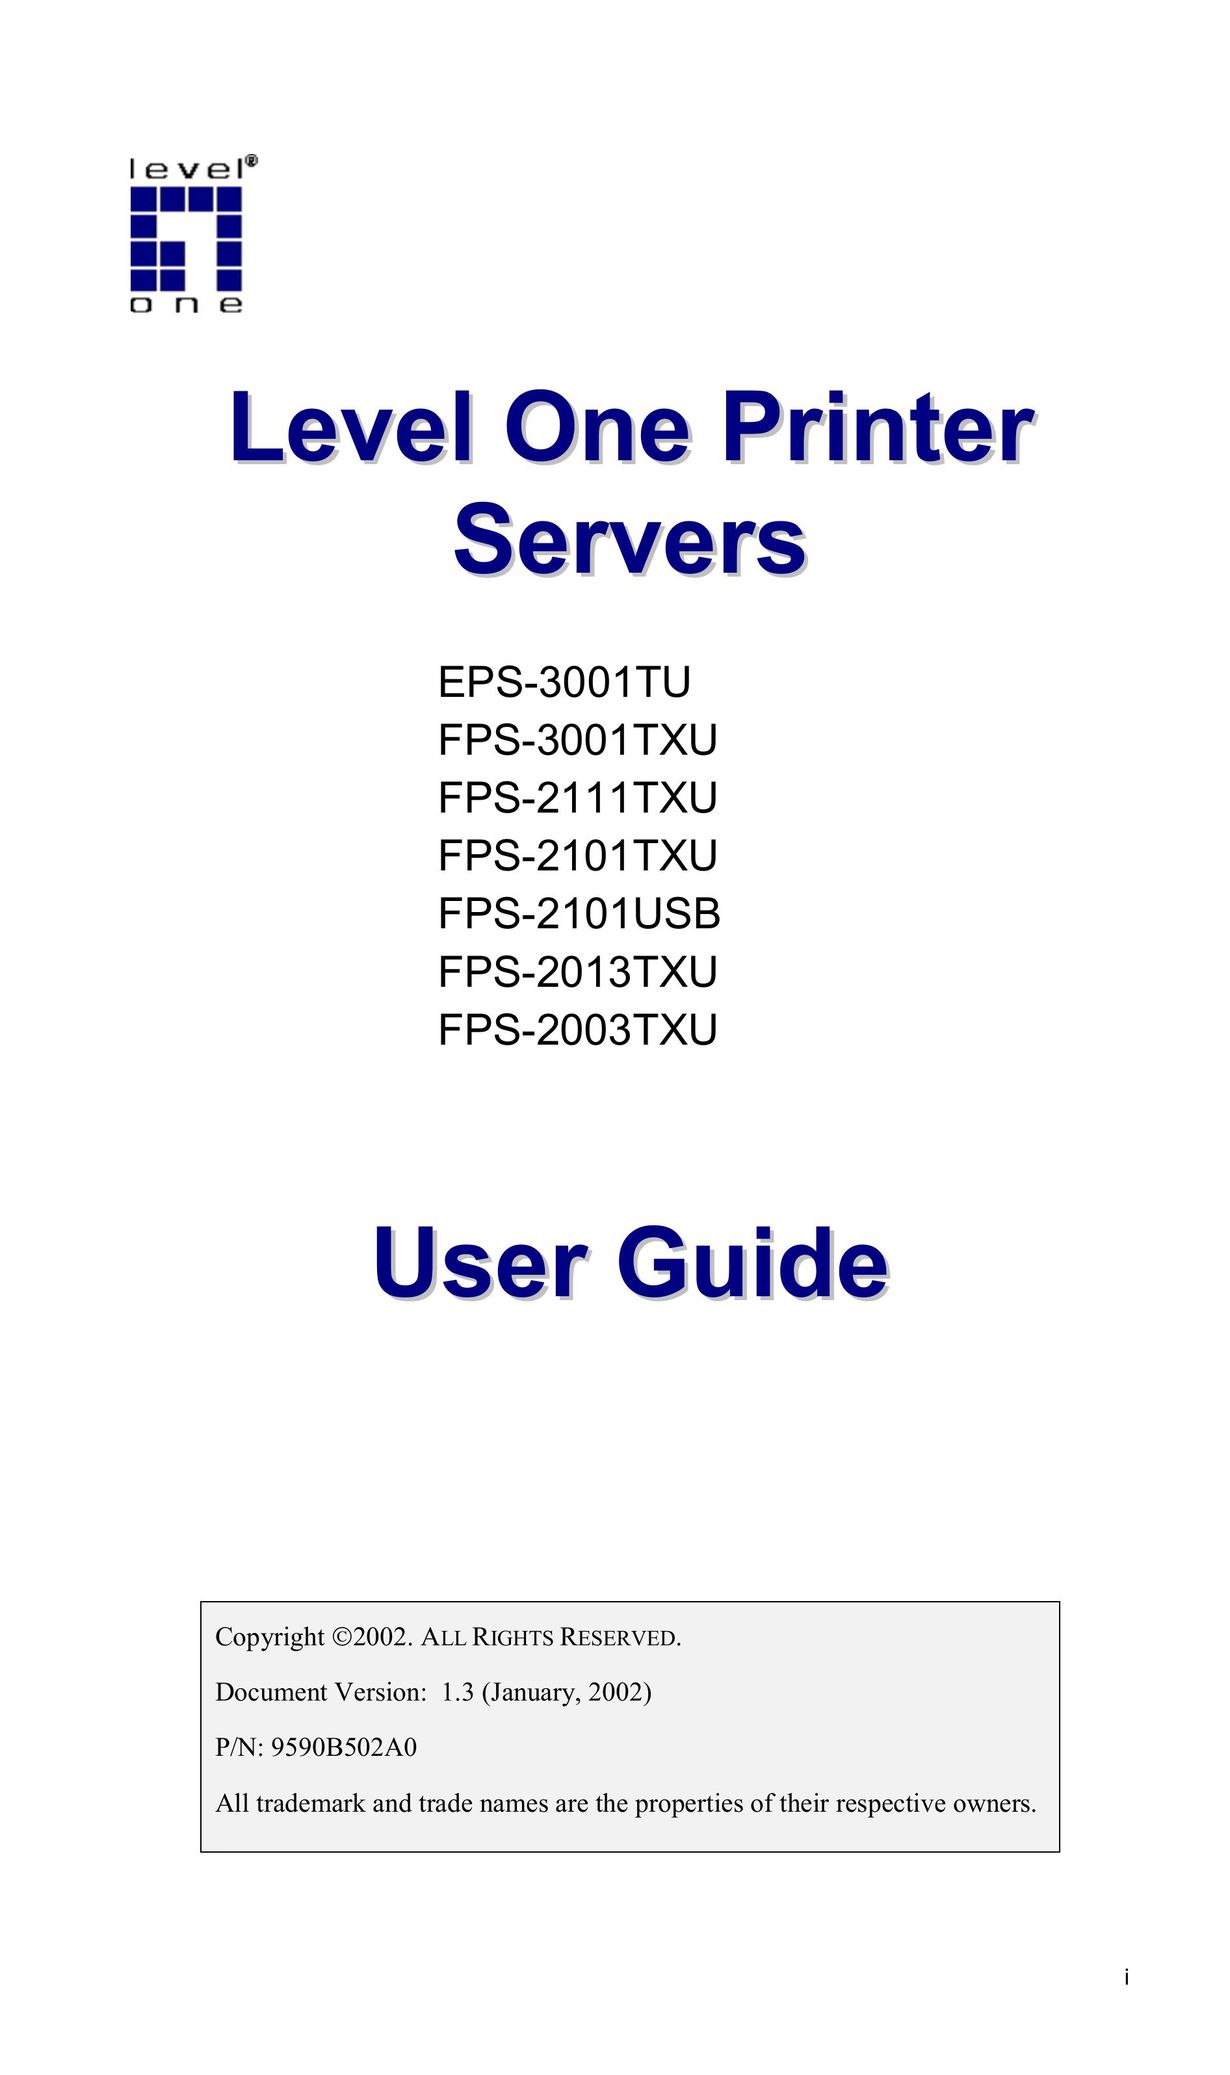 LevelOne FPS-2003TXU Printer User Manual